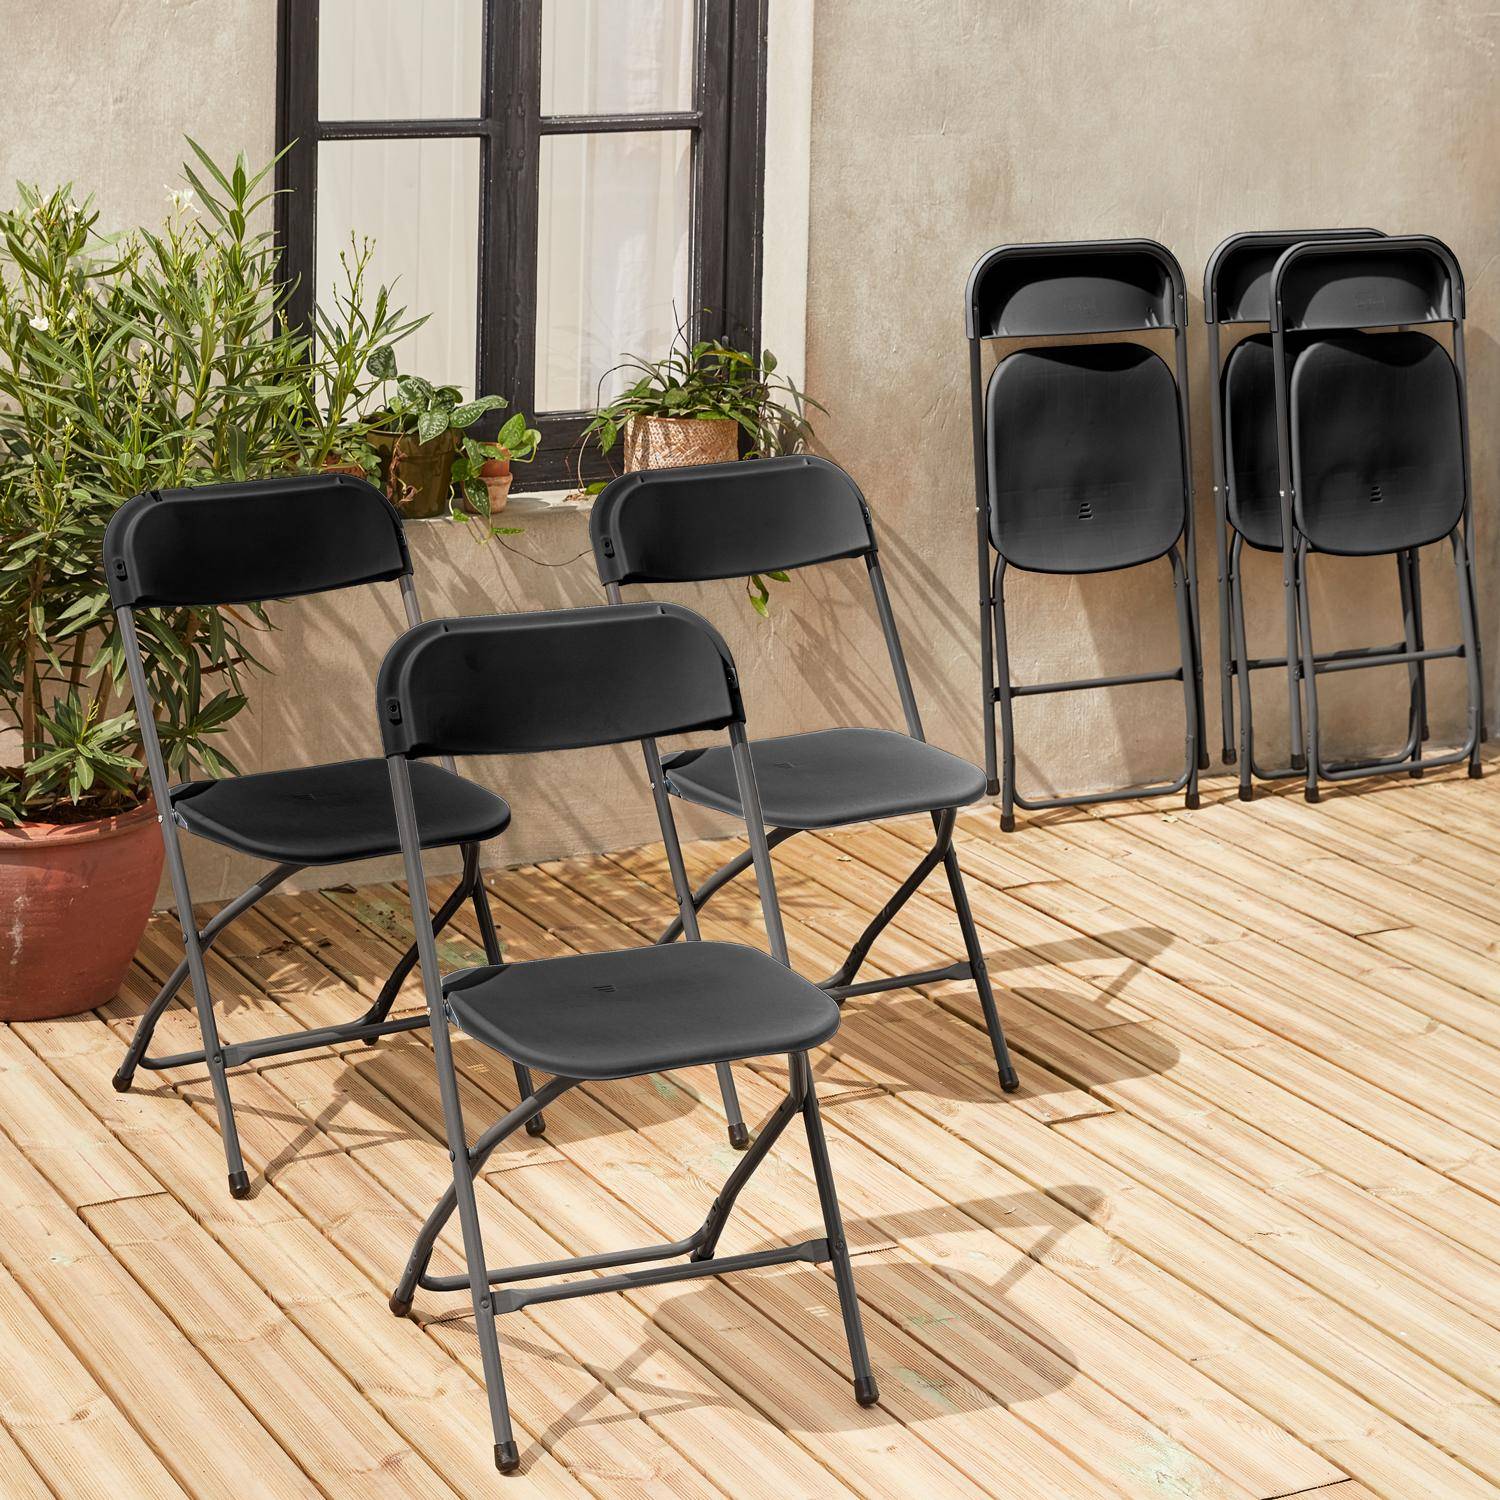  Chaises pliantes - Fiesta - 6 chaises latérales en plastique et métal gris foncé Photo2